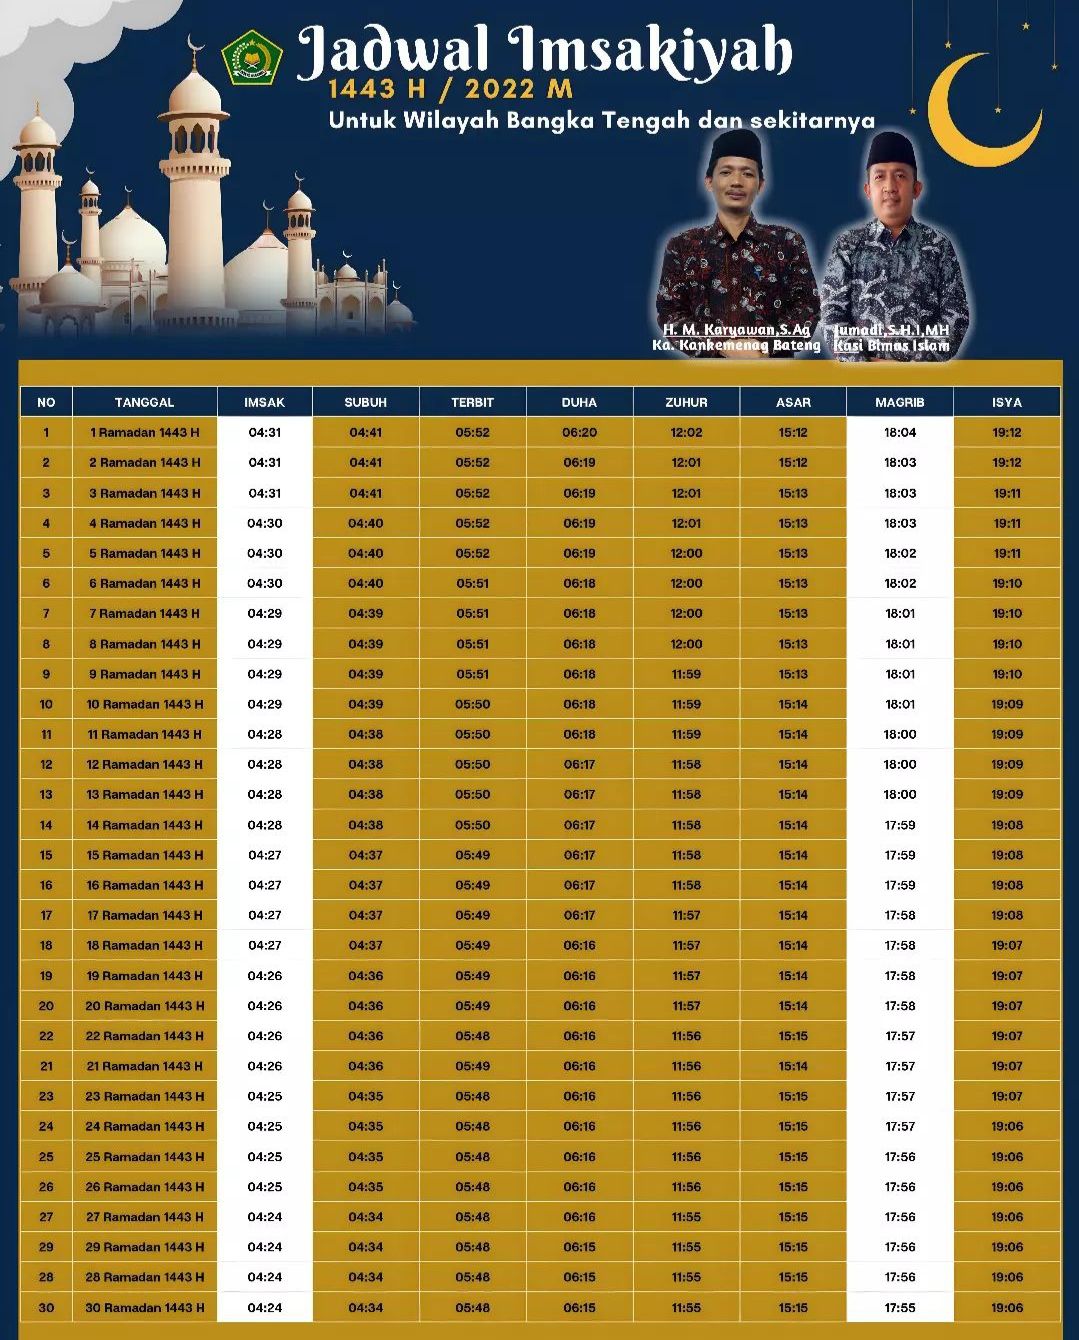 Jadwal imsak, buka puasa, sahur, dan sholat Kabupaten Bangka Tengah 'Bangka Belitung' Ramadhan 2022.